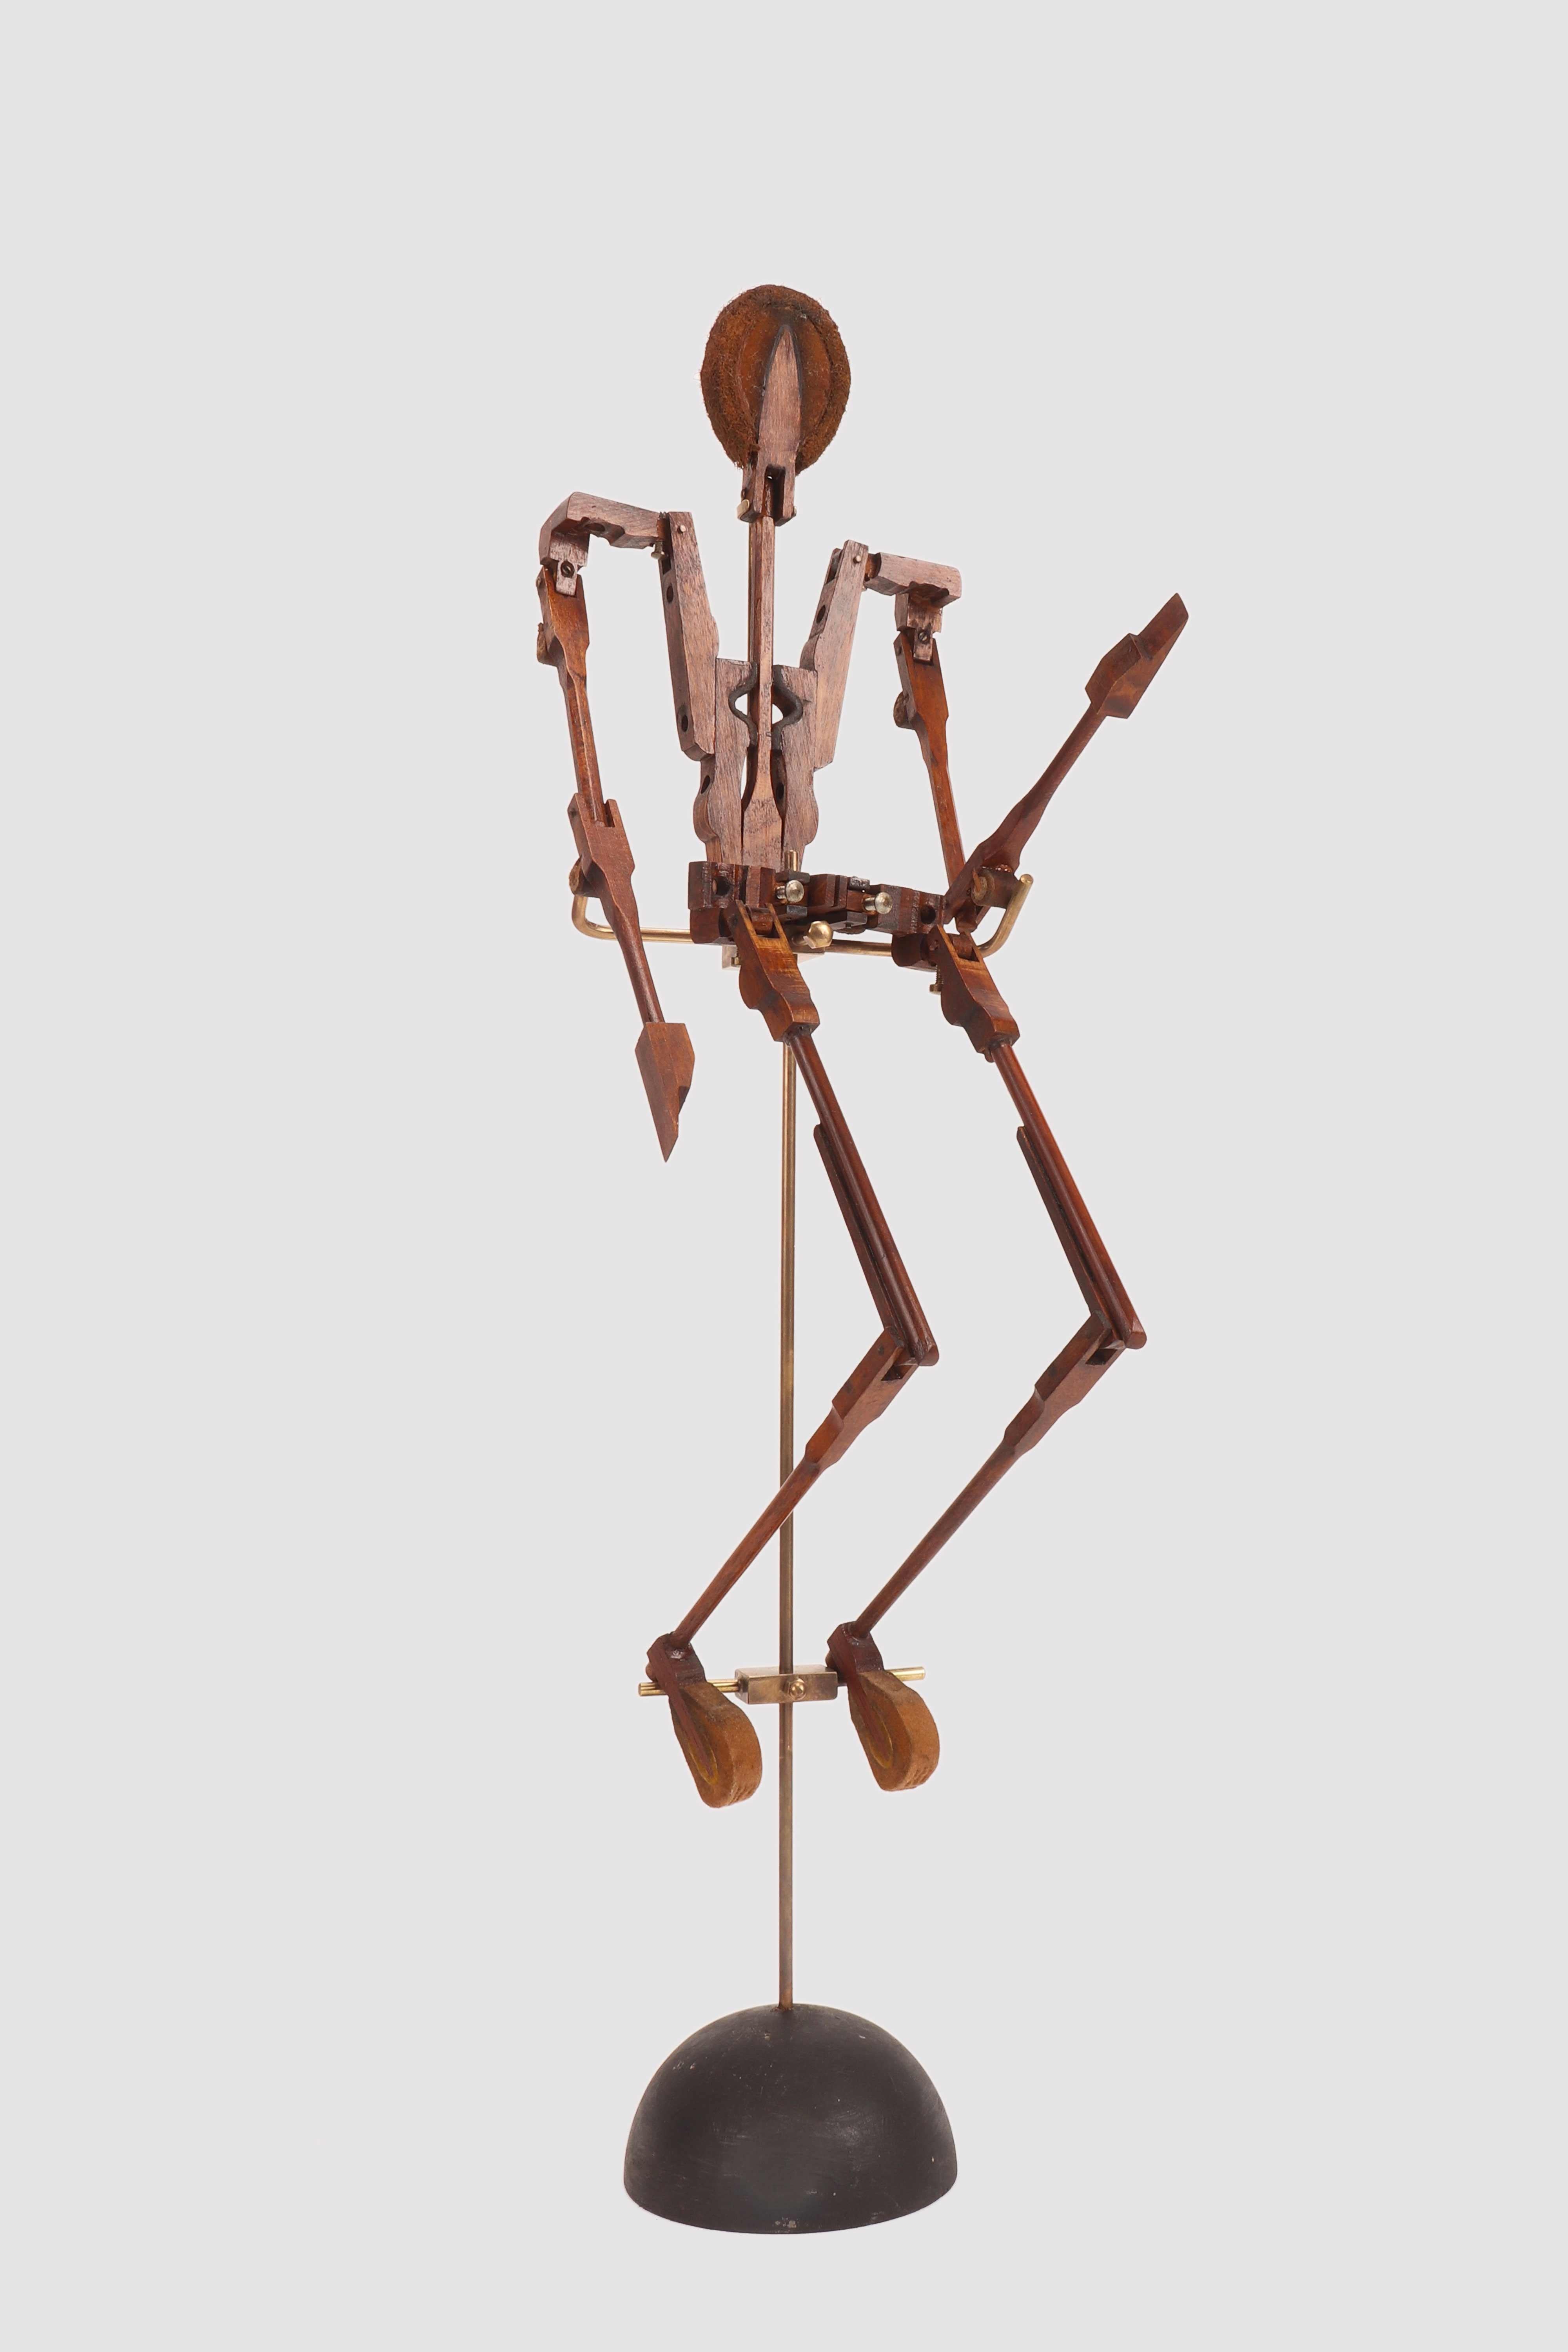 Un petit mannequin articulé unique en son genre, fabriqué avec les marteaux à percussion de 
un pianoforte. Les pieds et la face, de forme métaphysique, sont fabriqués à partir d'amortisseurs : il s'agit de blocs de bois recouverts de feutre, qui